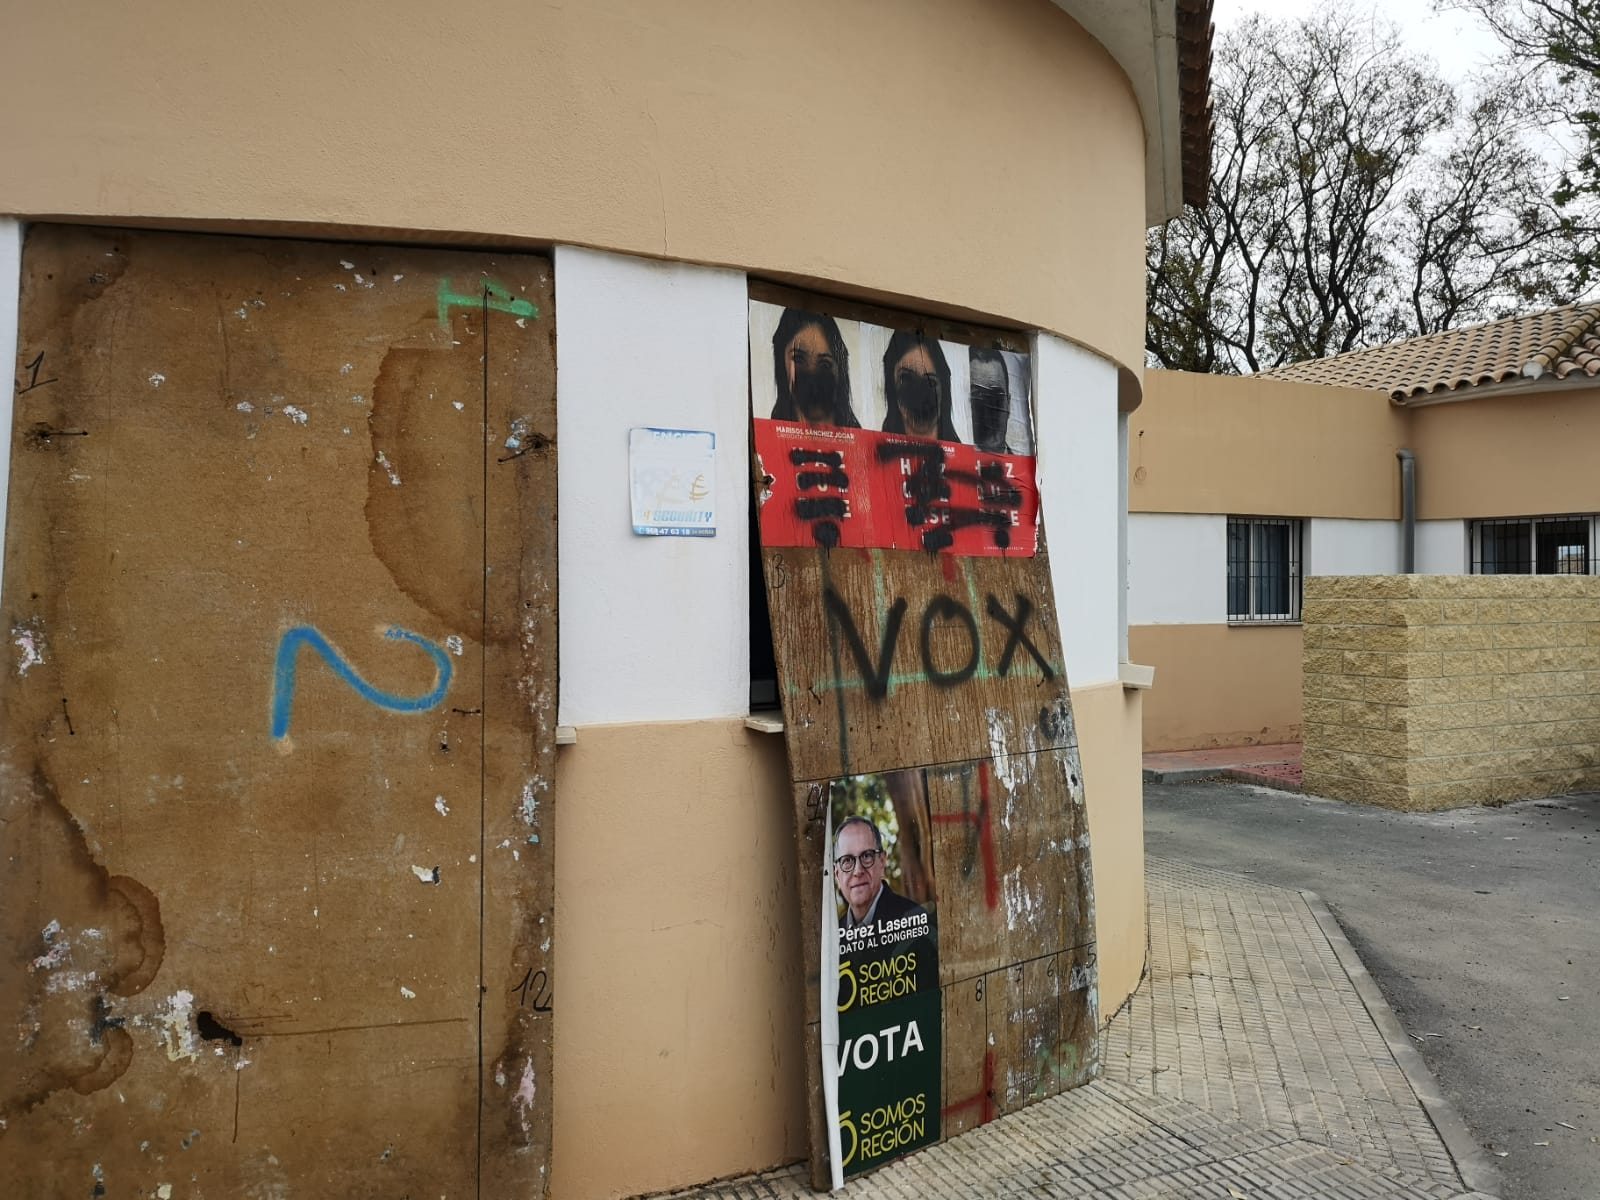 El PSOE denuncia ante la Junta Electoral de Zona la aparición de pintadas sobre sus carteles electorales y Guardia Civil abre diligencias para identificar los autores